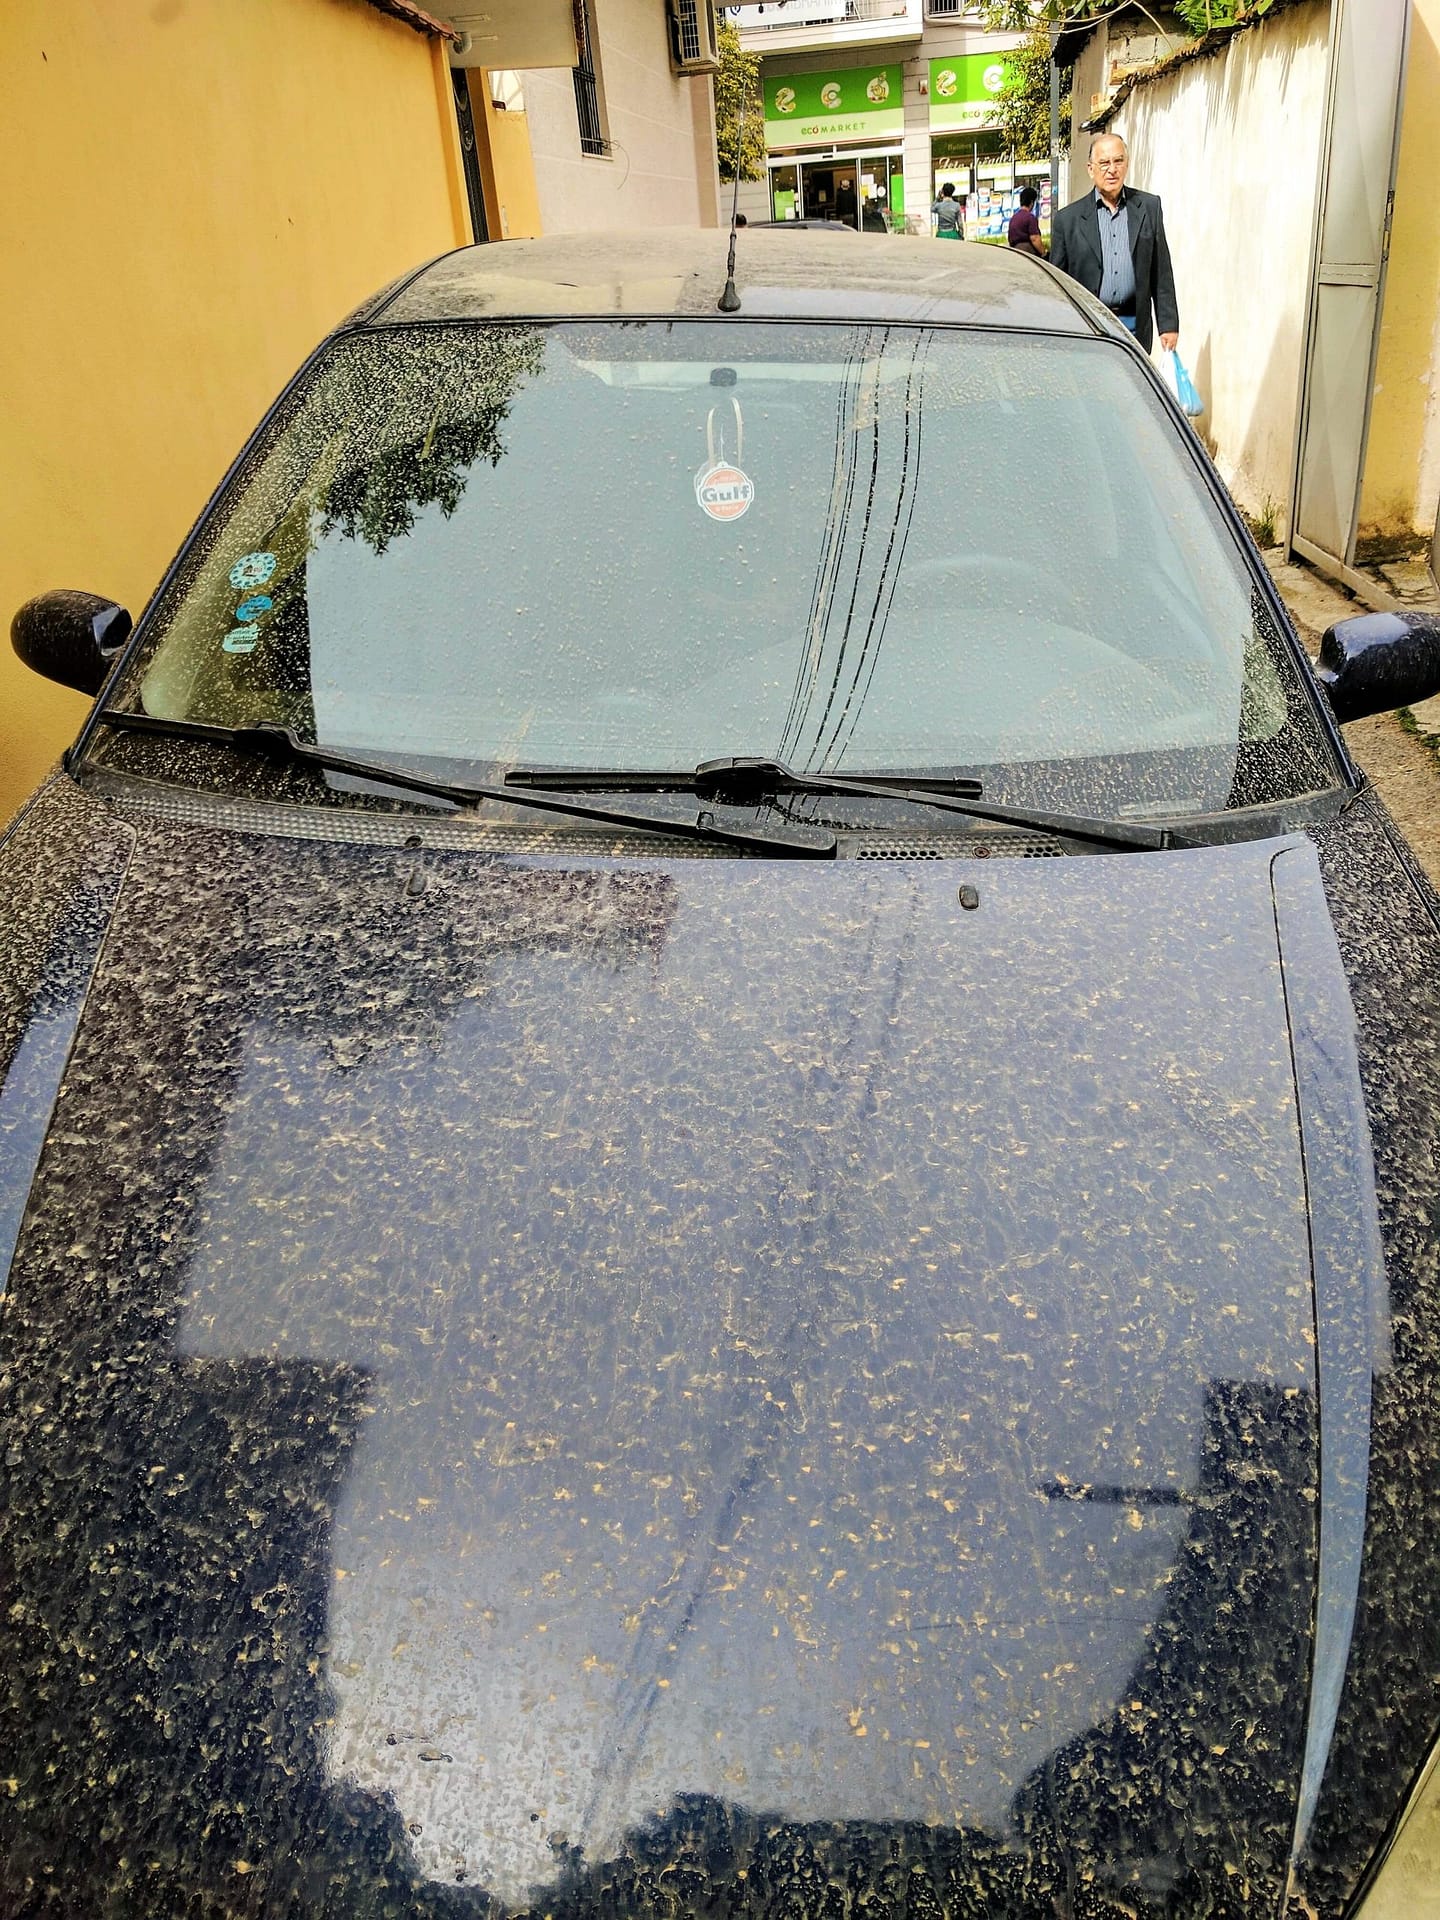 Dirty car in Tirana